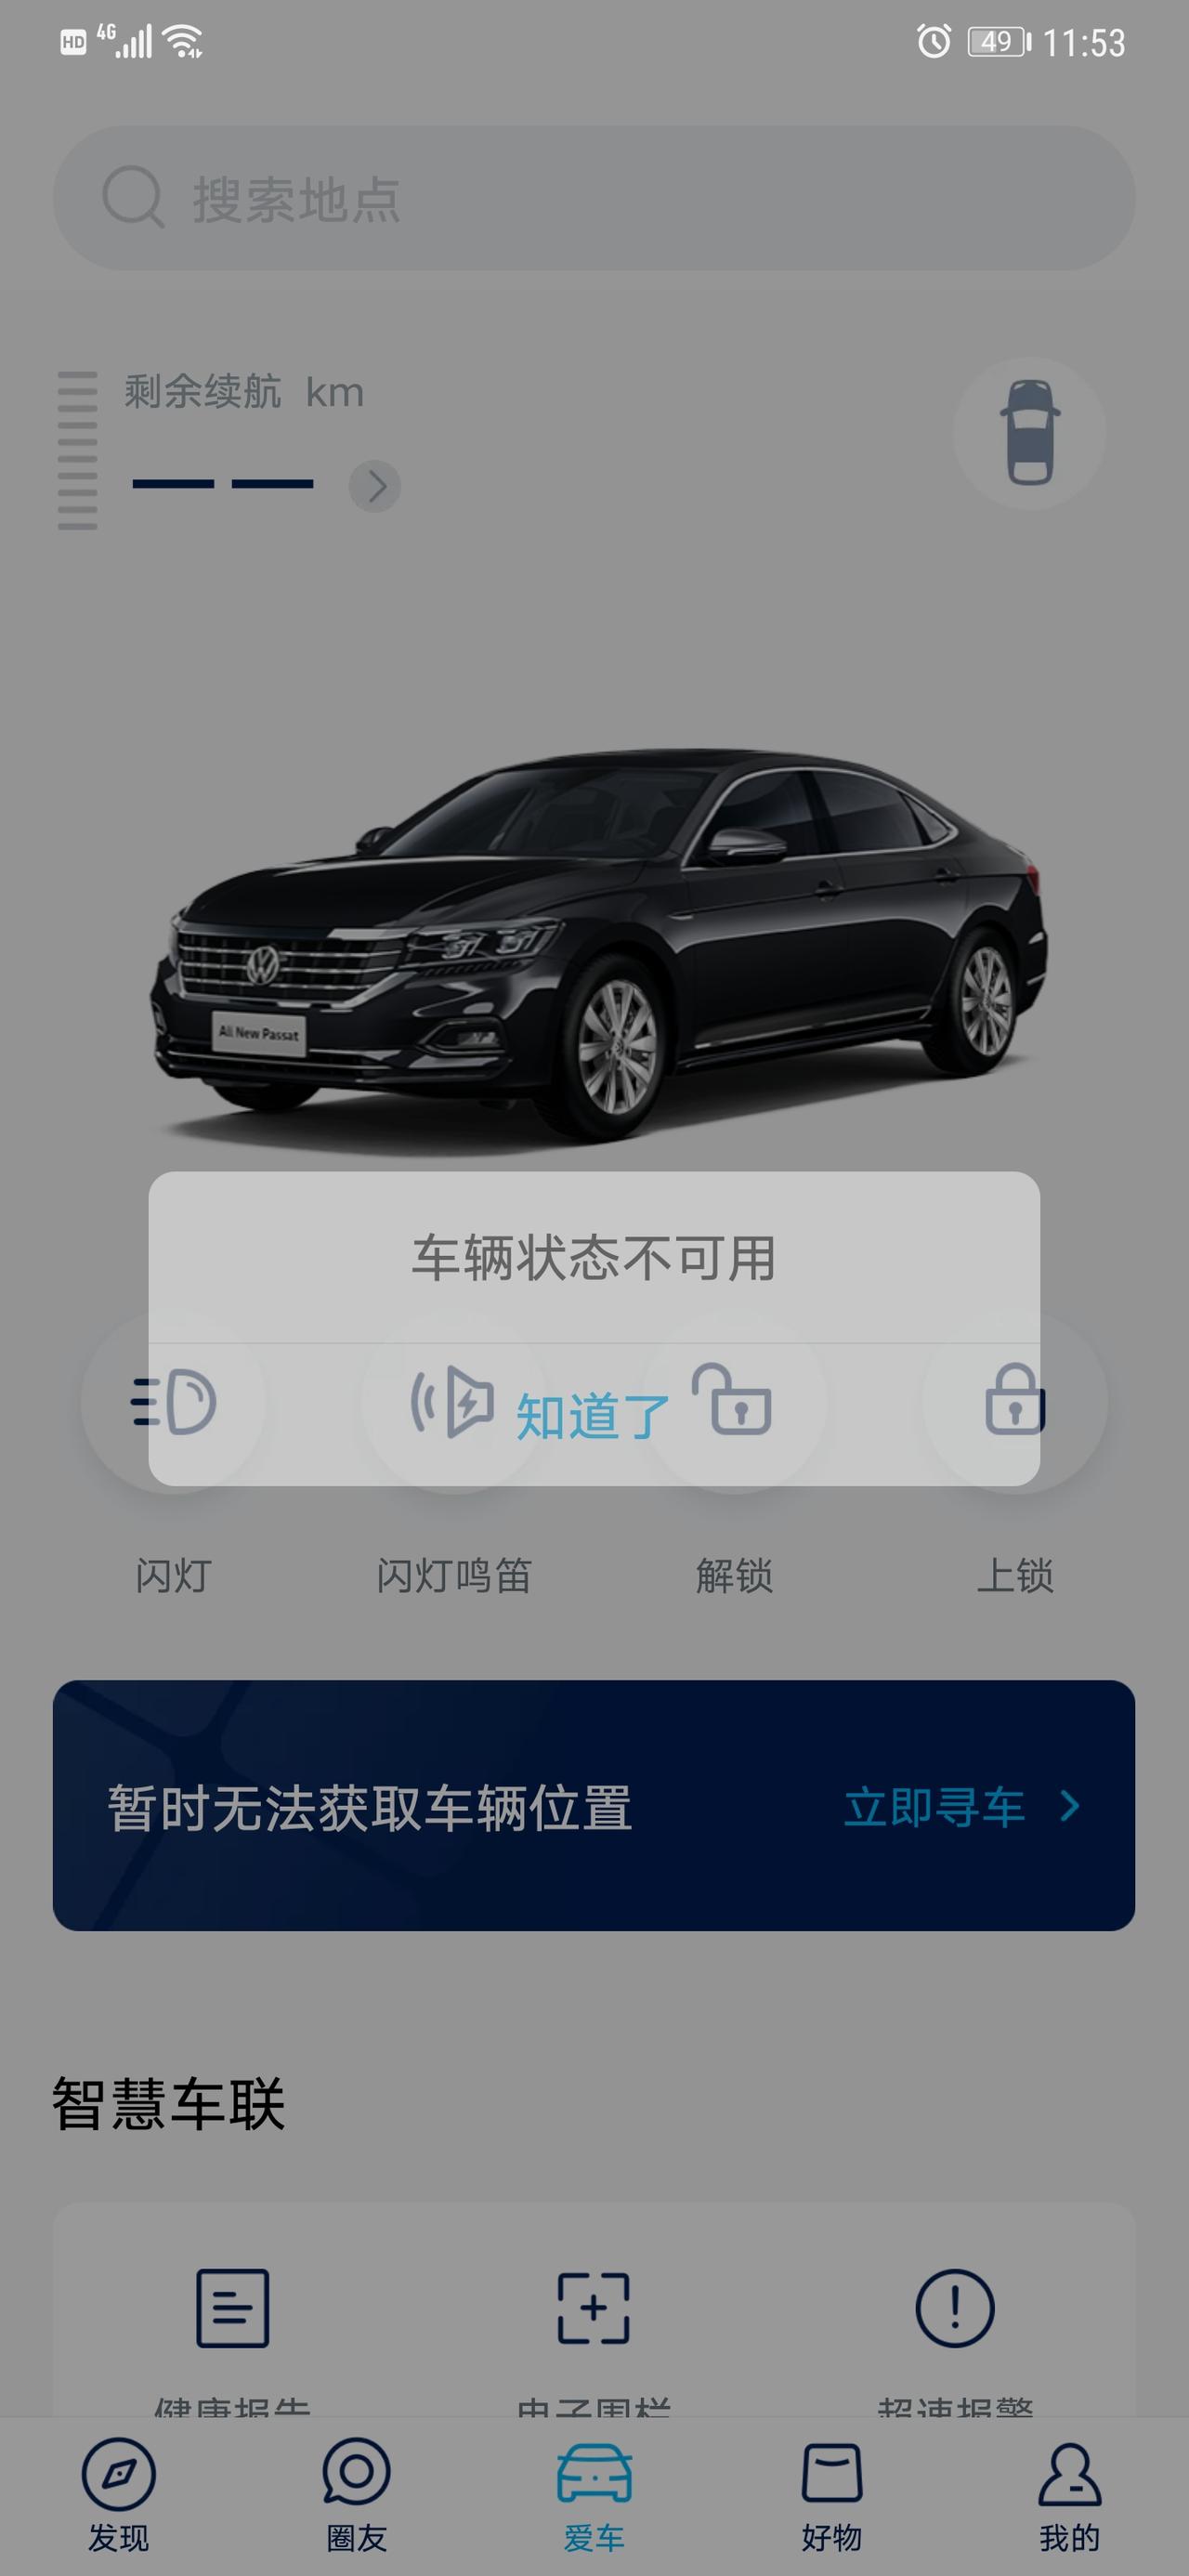 大众帕萨特 刚买的新车用上海大众的APP显示车辆状态不可用，实名认证什么的都过了。有知道什么原因的吗